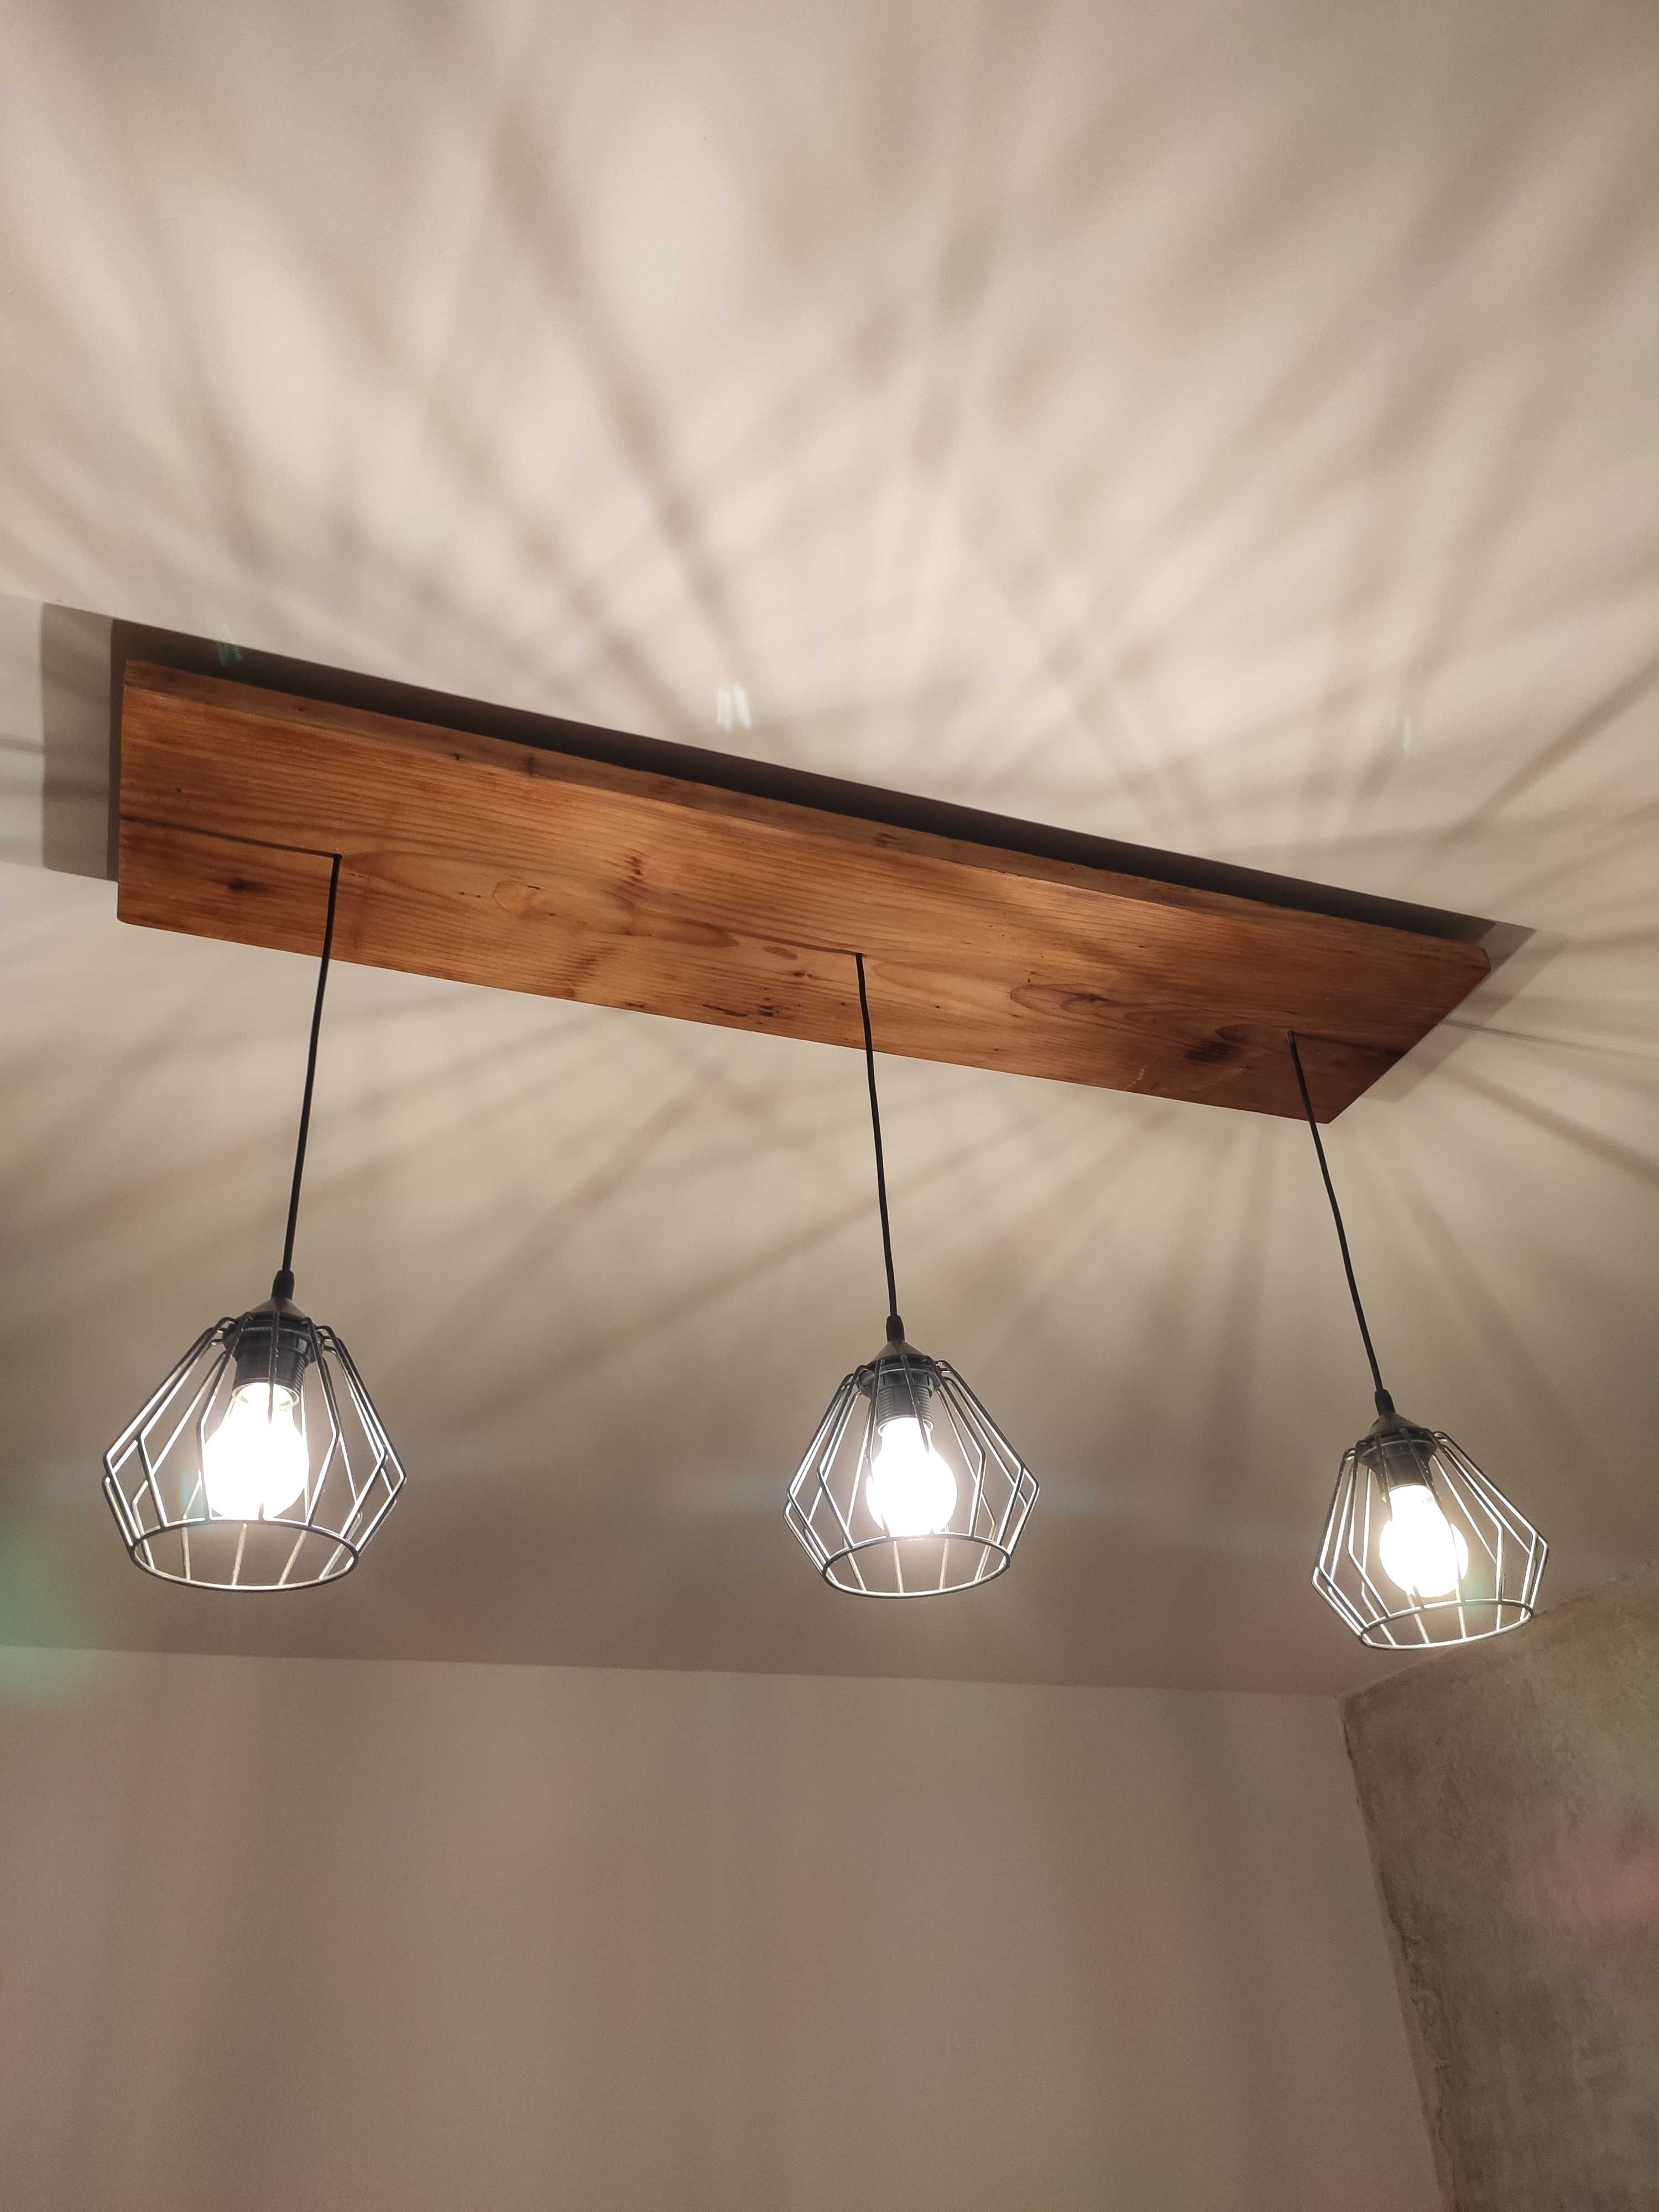 Lampa loft industrial oświetlenie żyrandol loftowy deska rustykalna